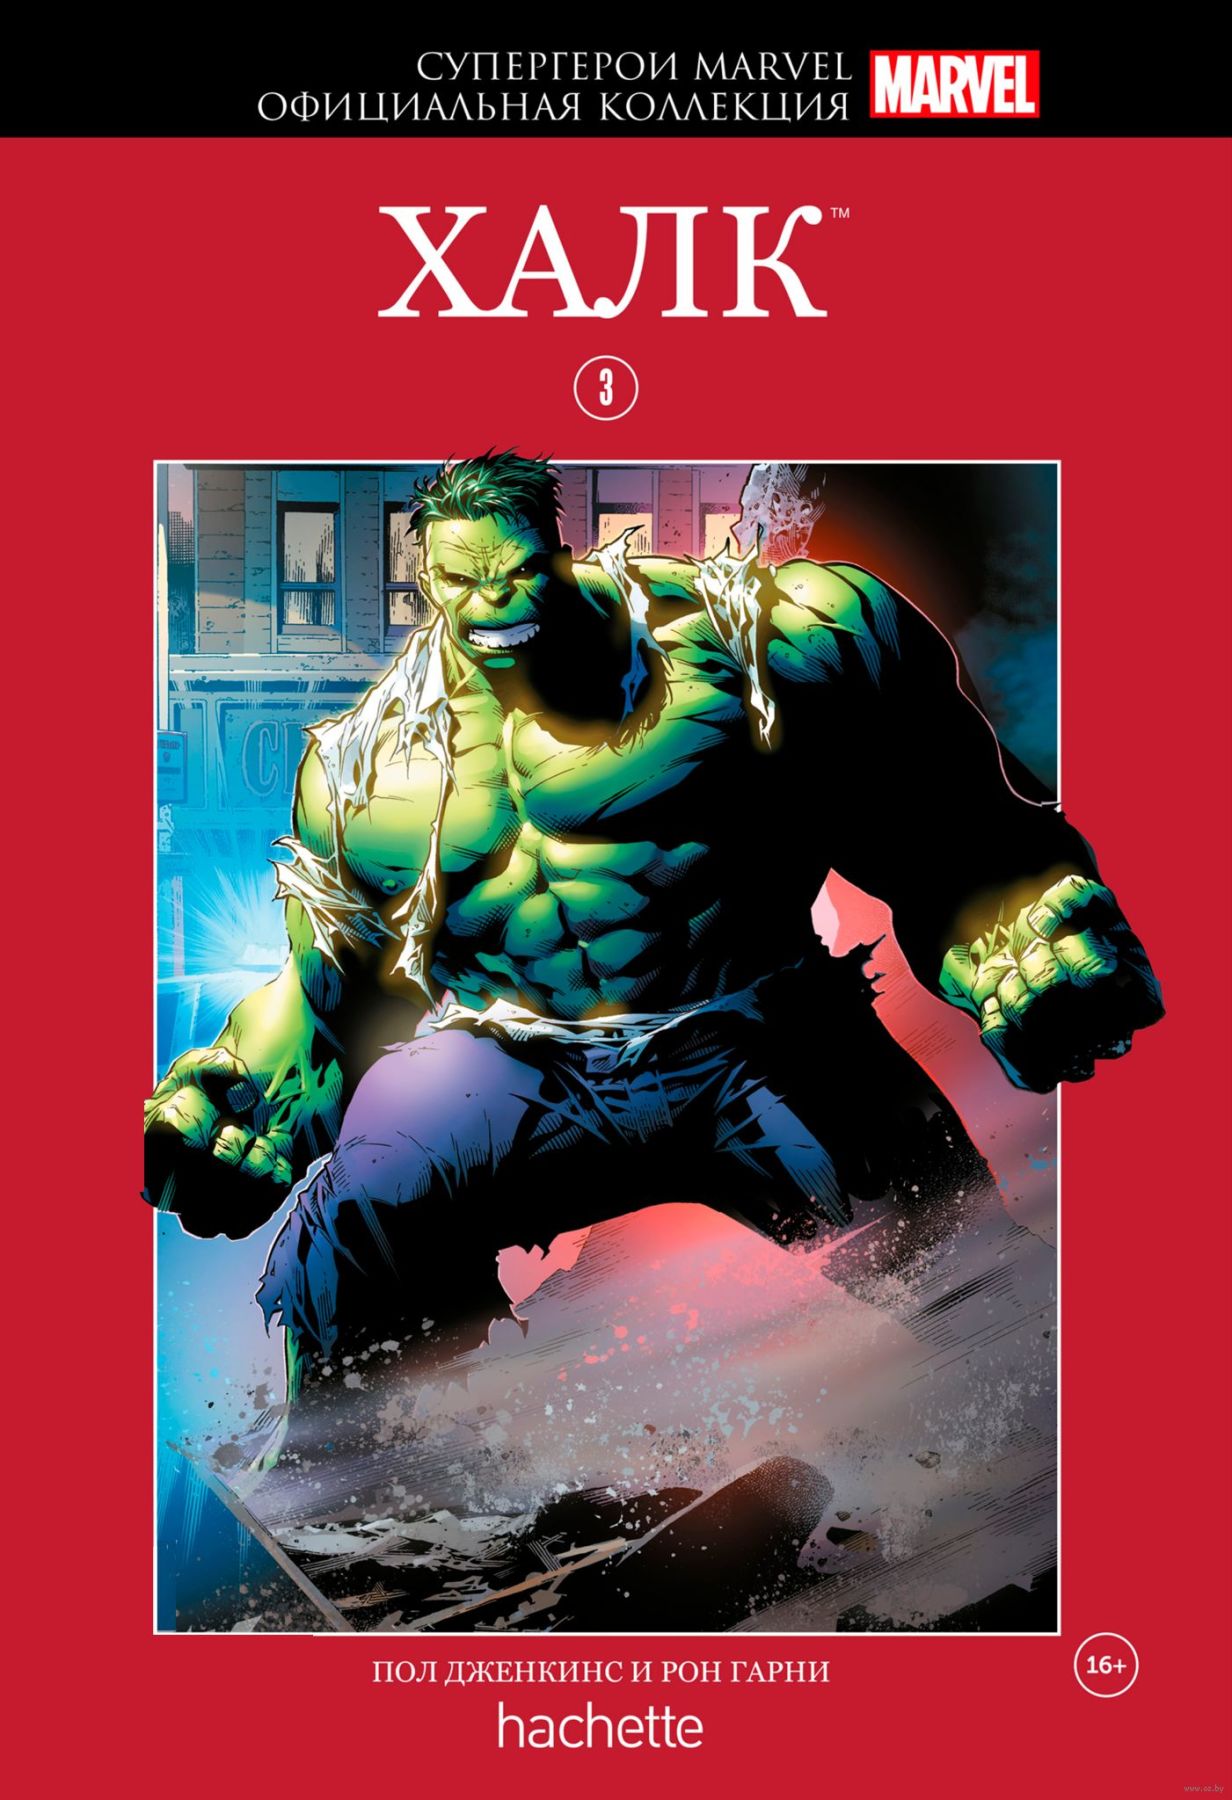 Комикс на русском языке «Супергерои Marvel. Официальная коллекция. Том 3. Халк»